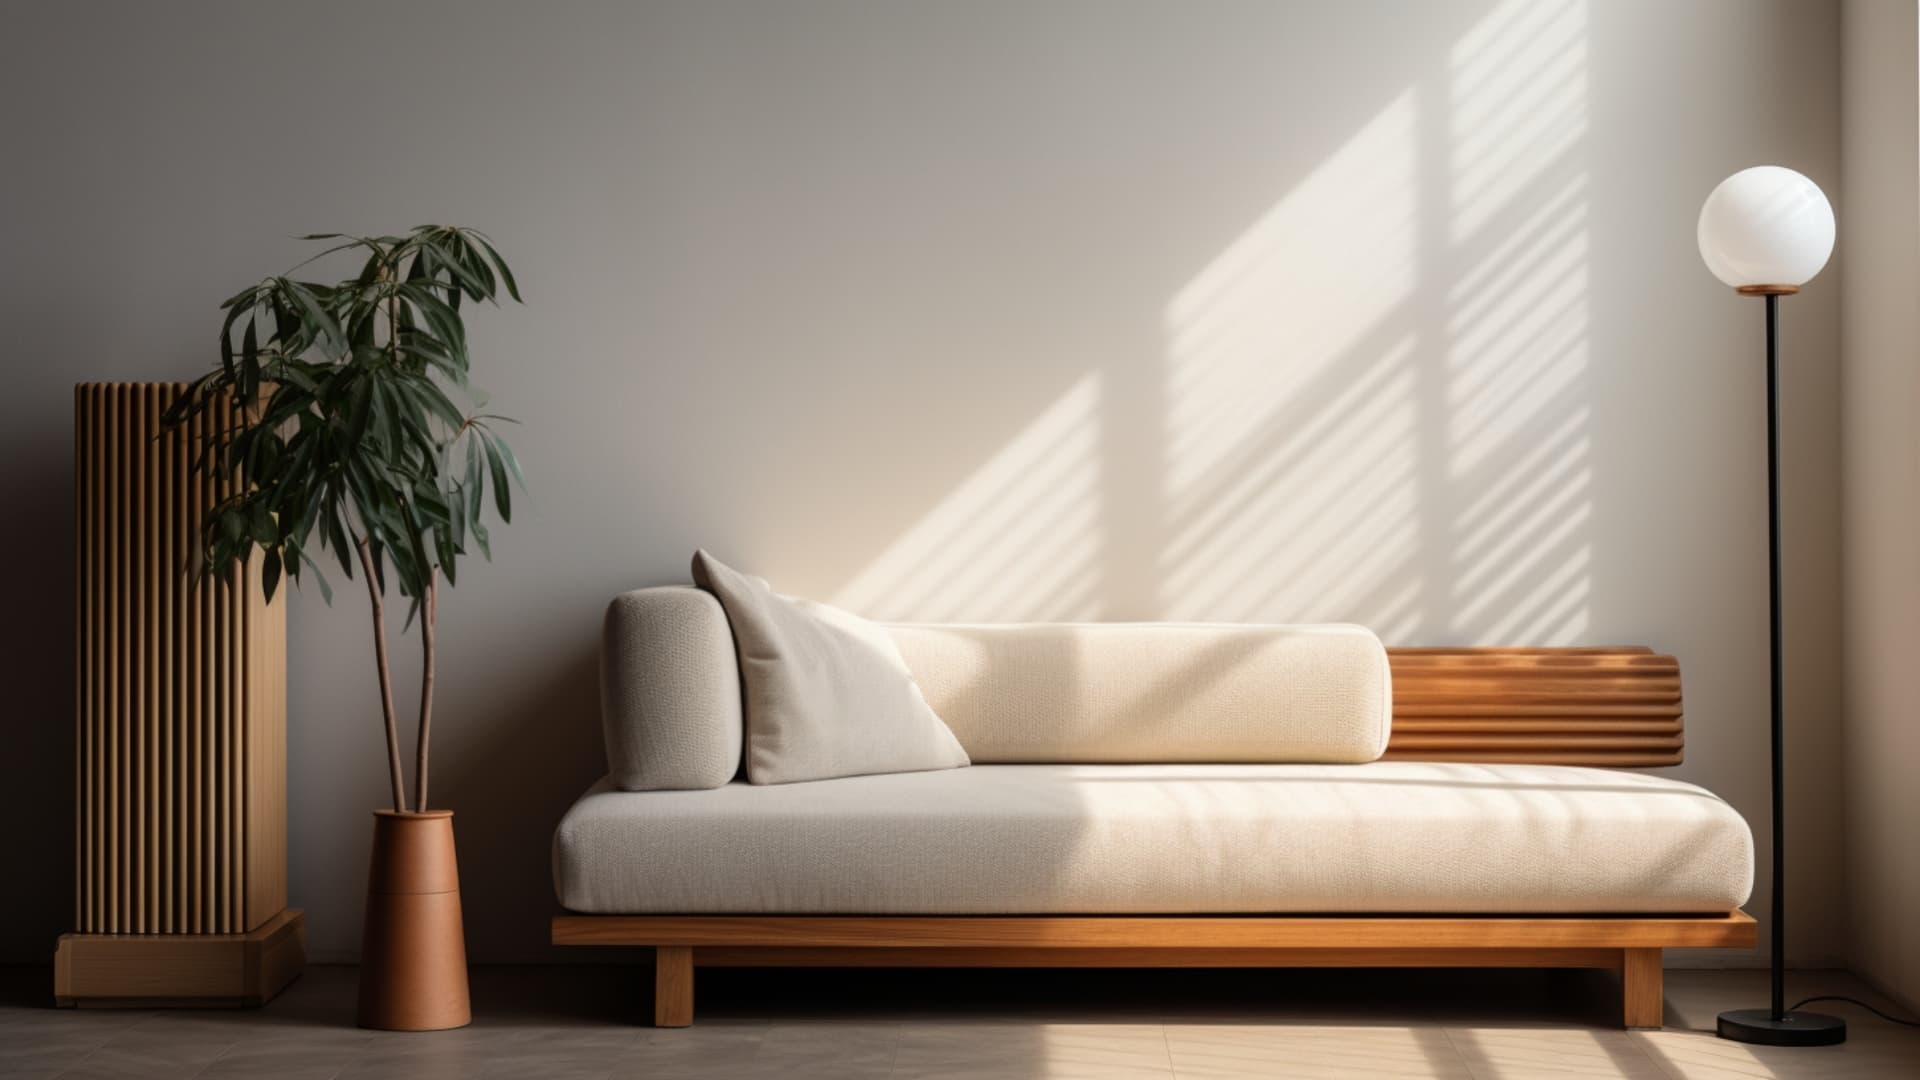 観葉植物やソファ、フロアランプが置かれた温もりのある部屋に、温かな日光が差し込んでいる写真